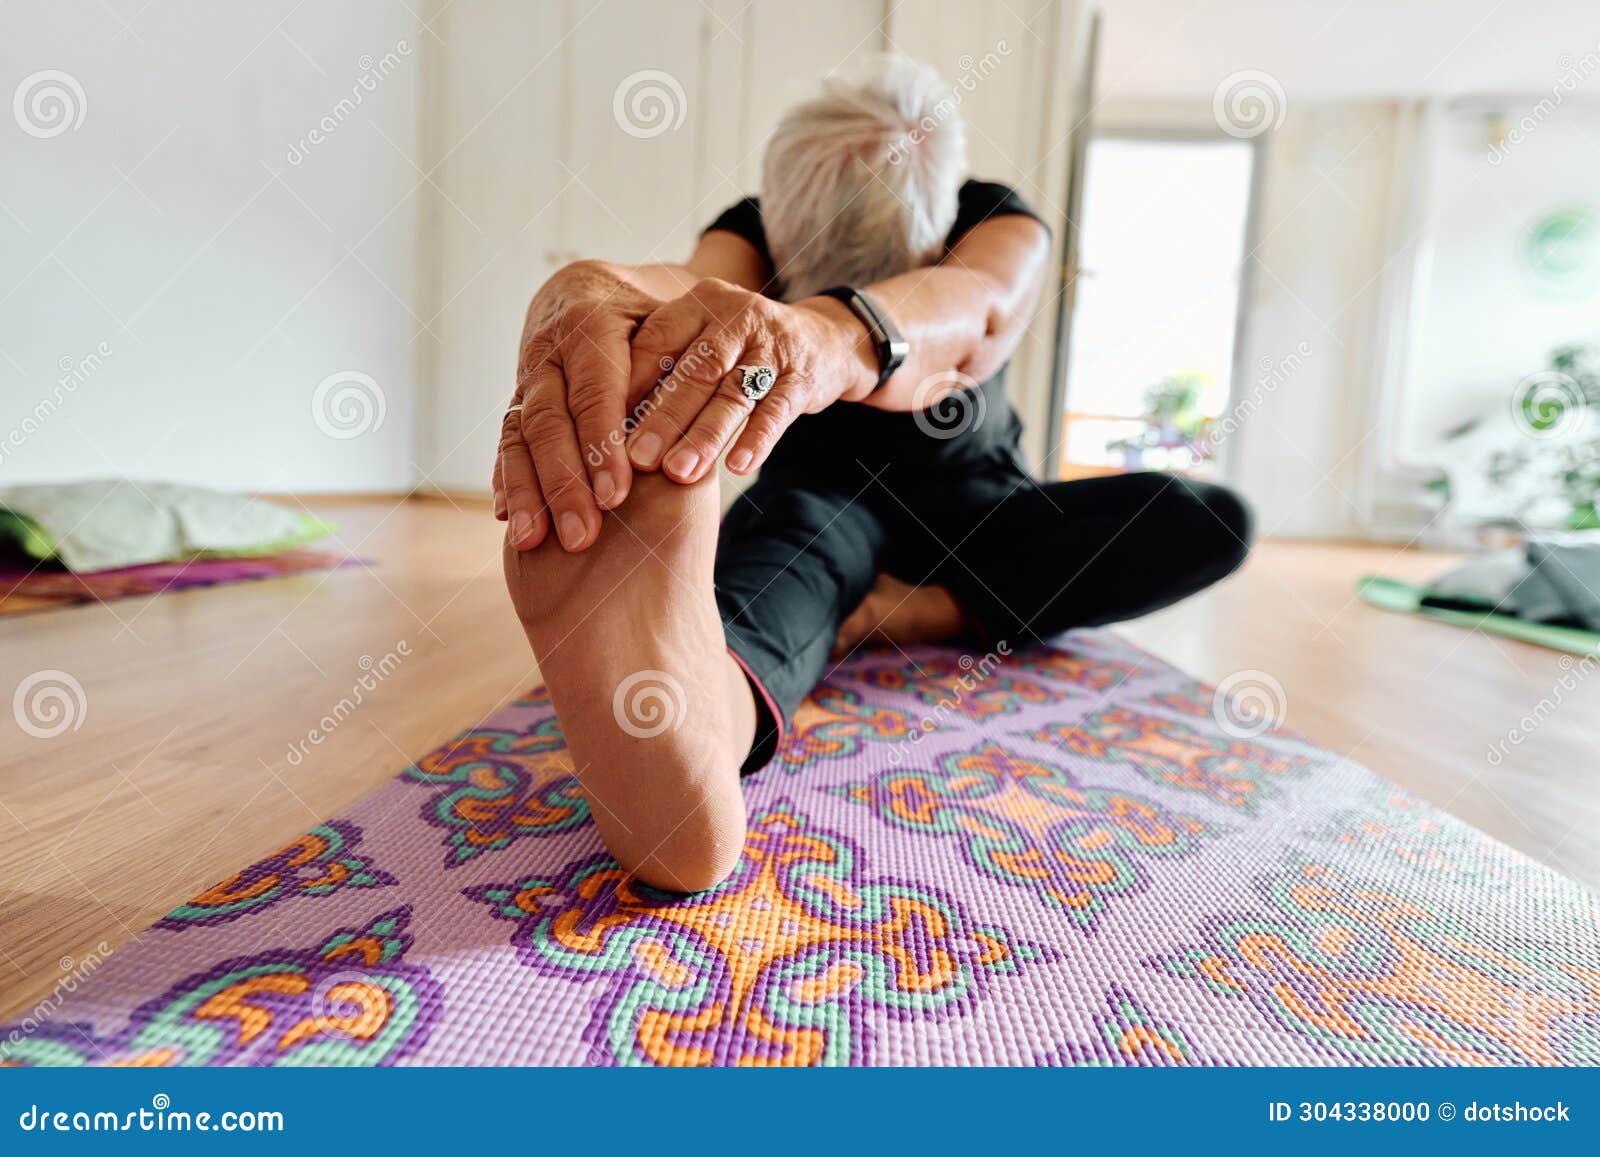 Yoga: Yoga Poses For Better Flexibility In Elderly